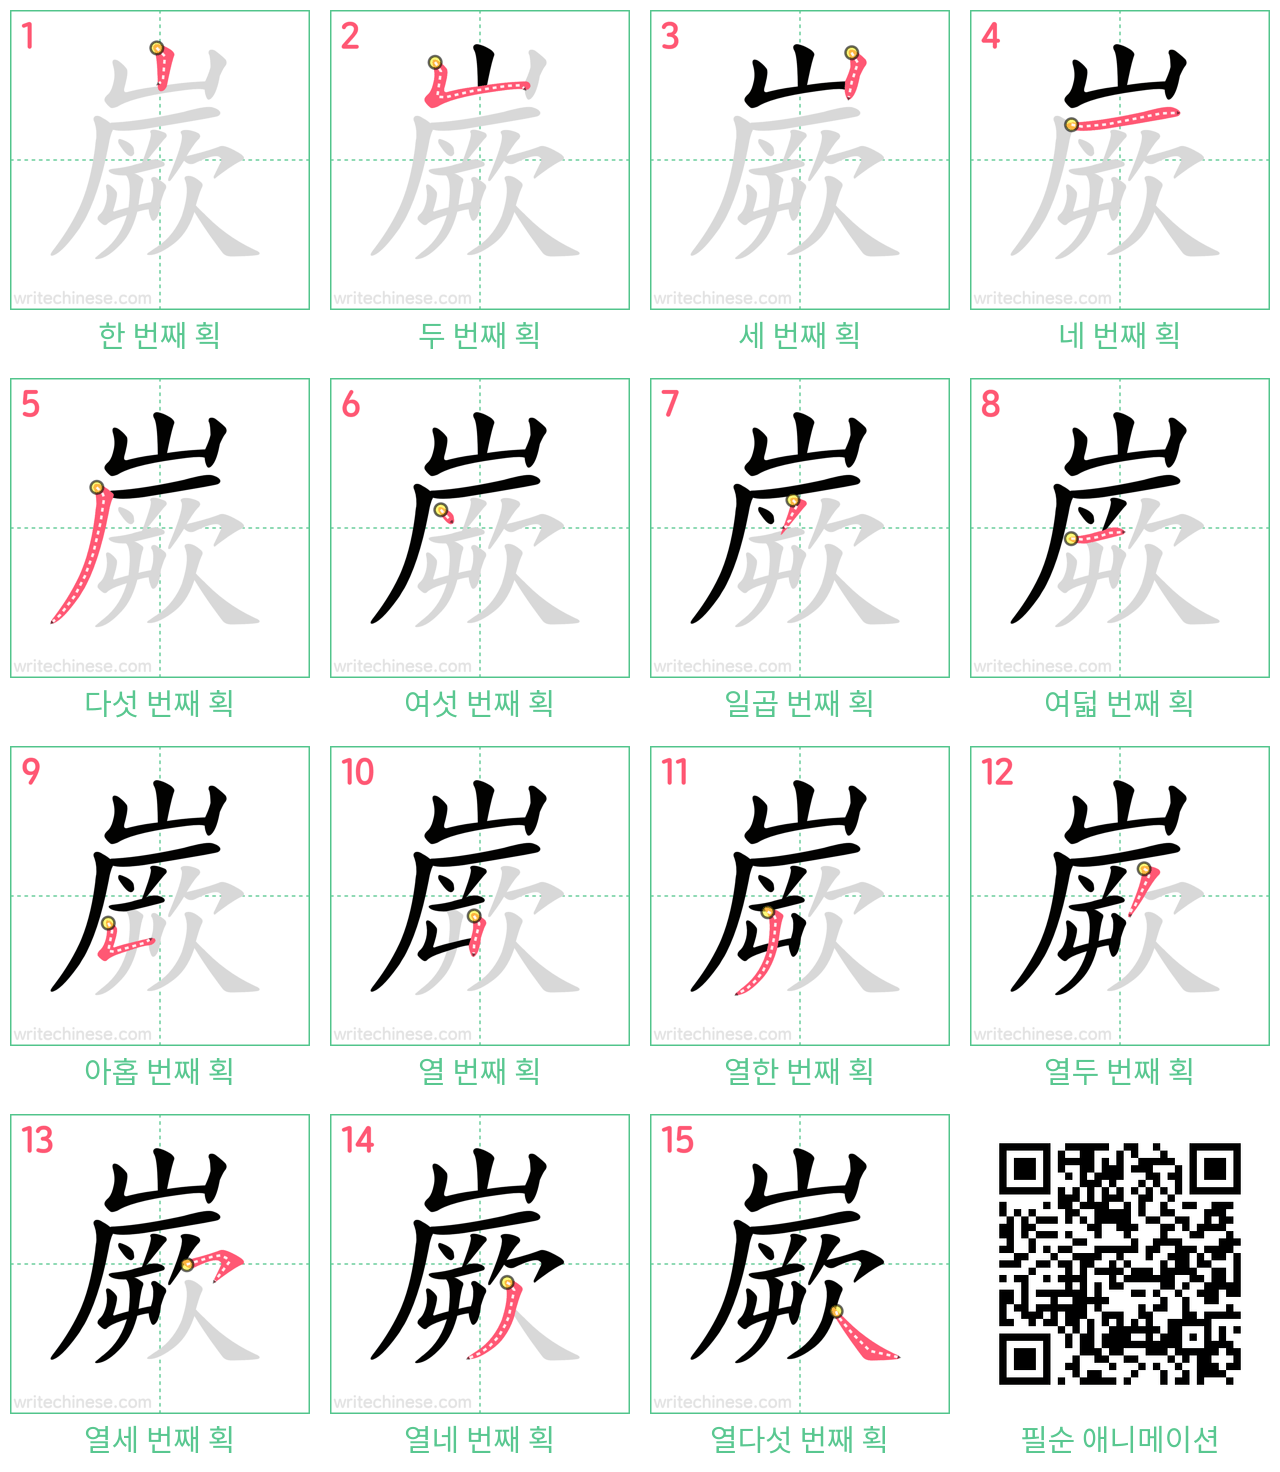 嶡 step-by-step stroke order diagrams